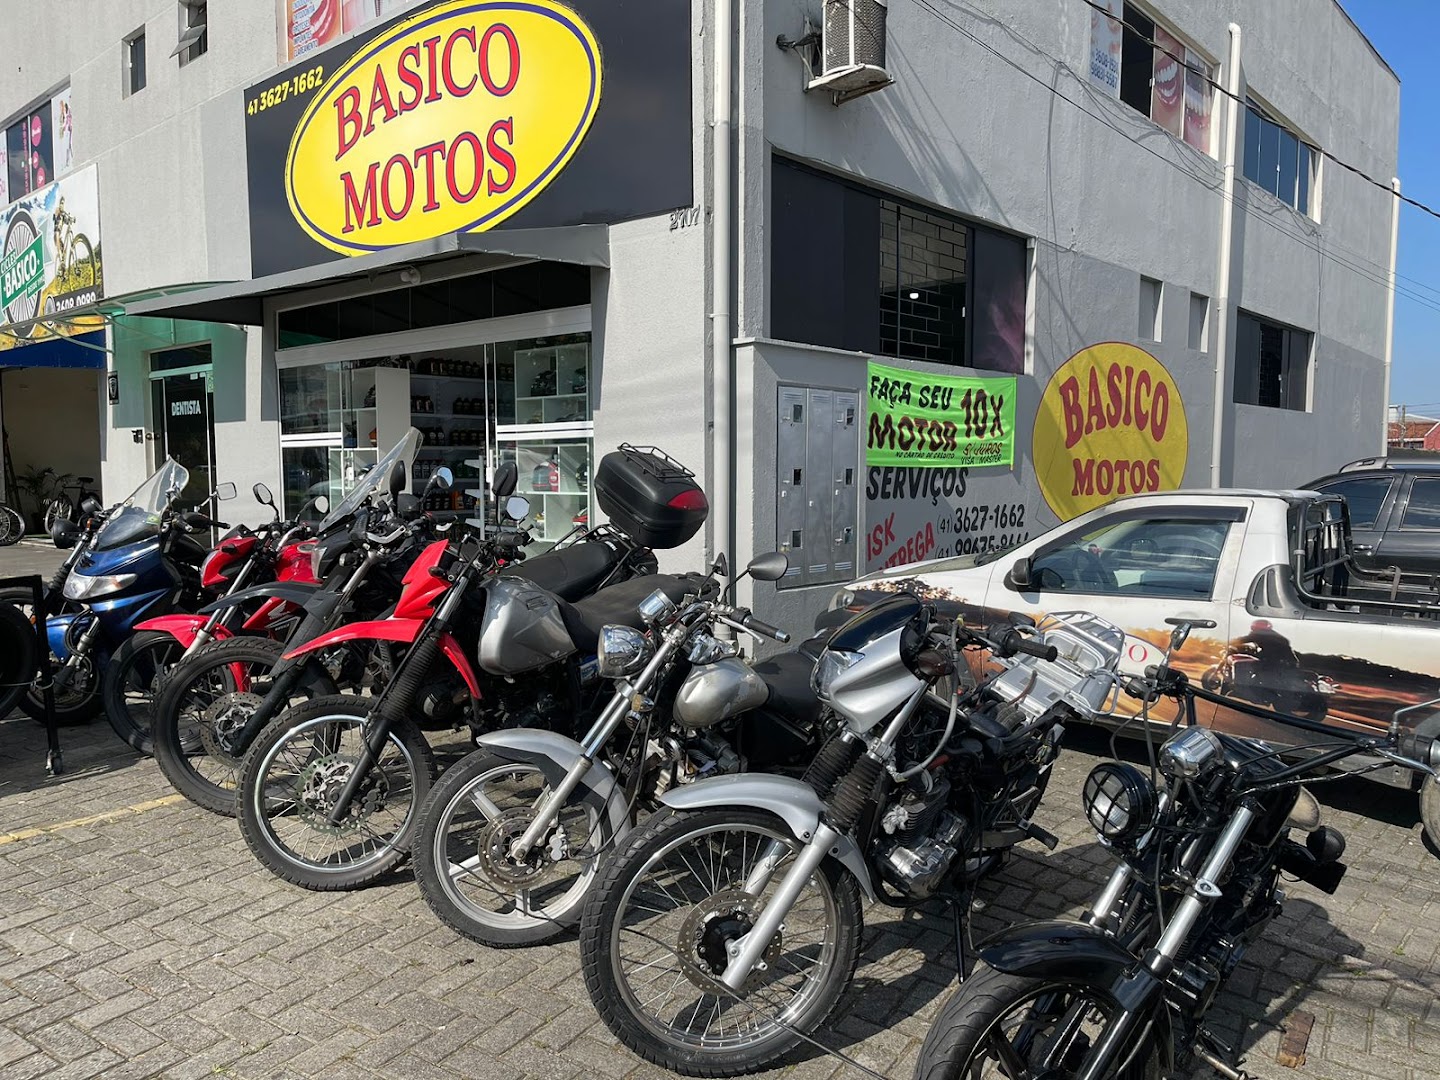 BASICO MOTOS - Loja De Peças Para Motocicletas em Nações